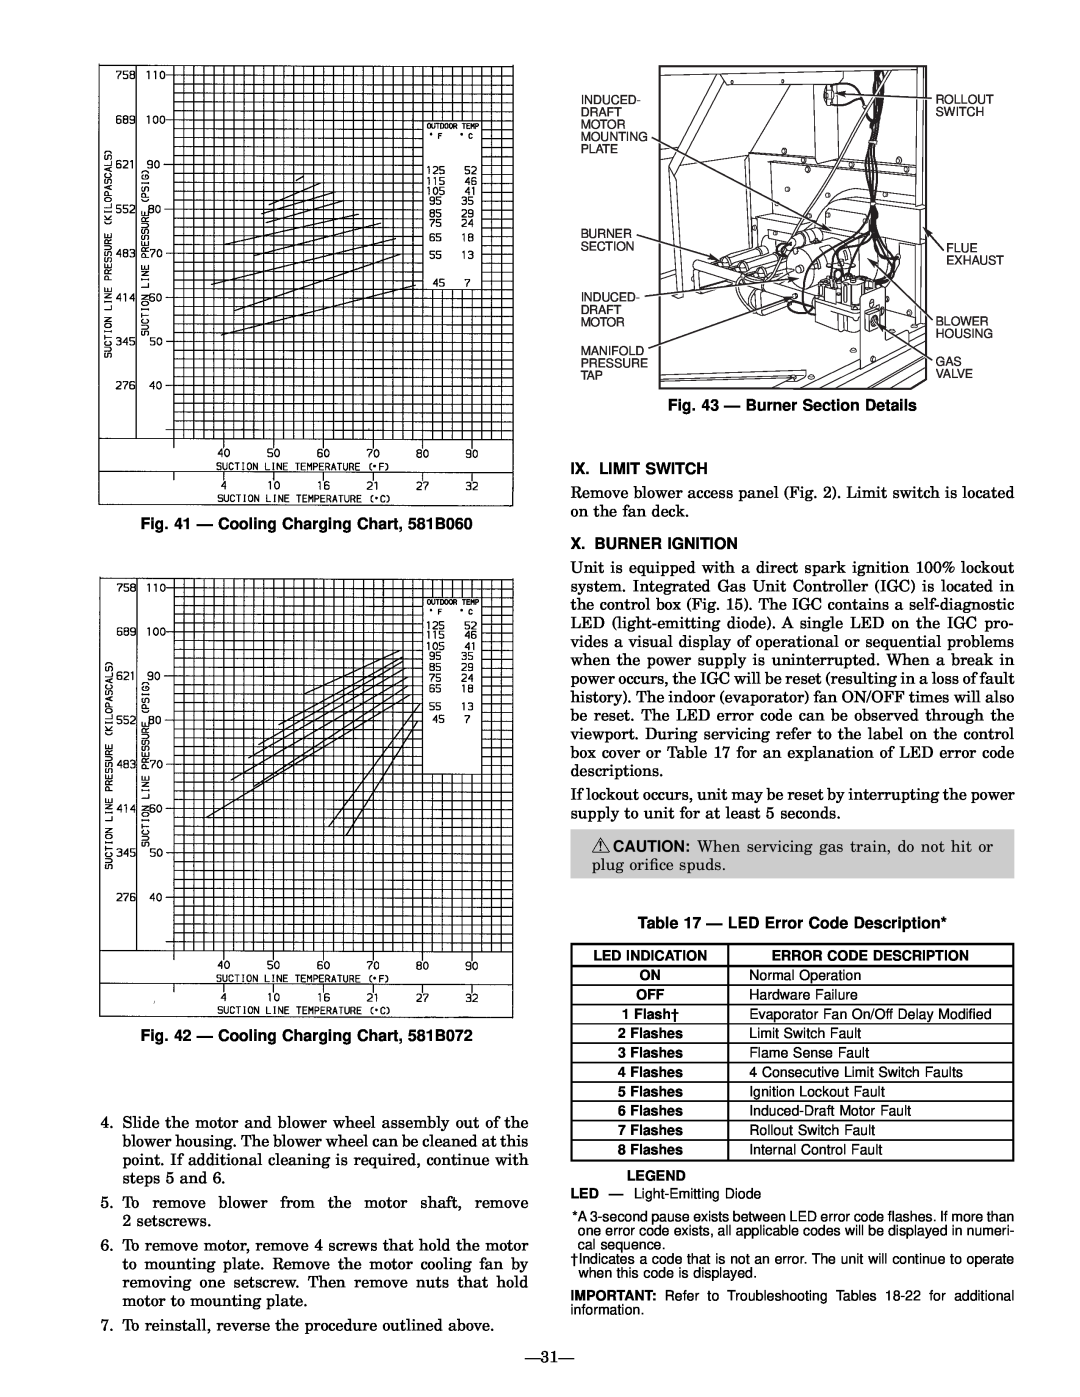 Bryant Ð Burner Section Details IX. LIMIT SWITCH, Ð Cooling Charging Chart, 581B060, X. Burner Ignition 